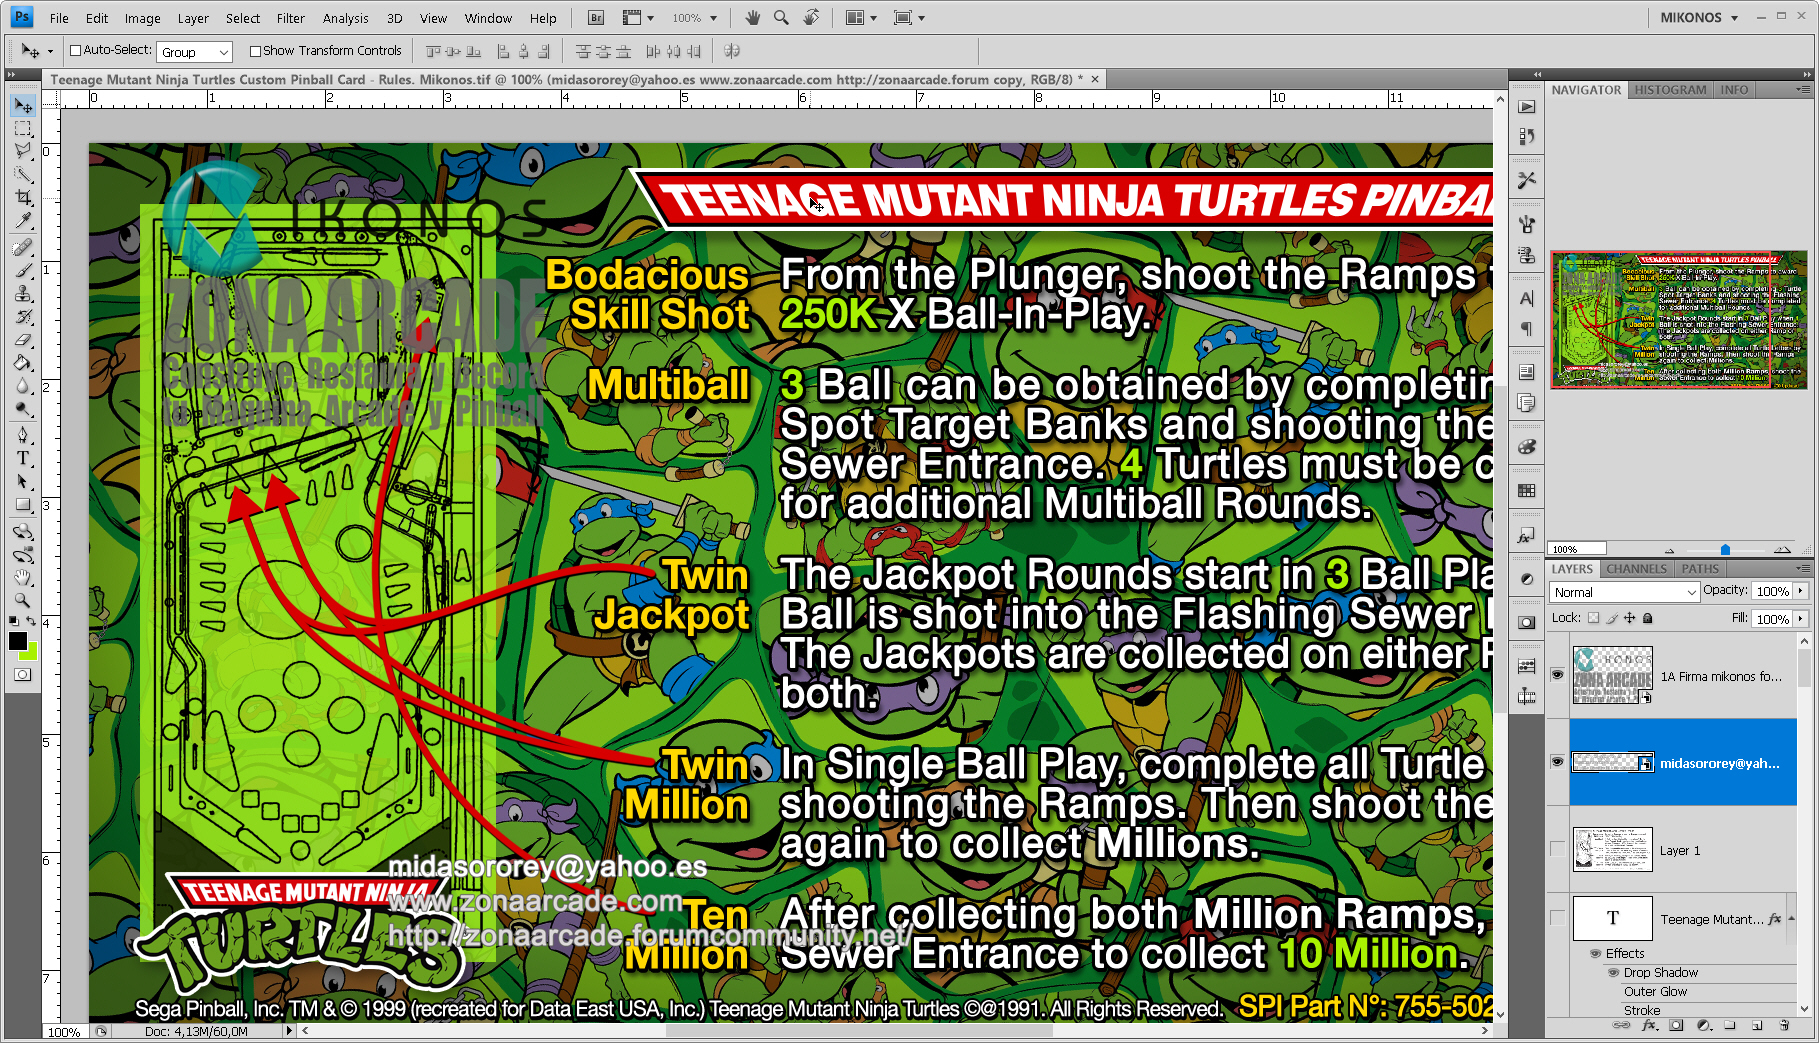 Teenage Mutant Ninja Turtles Pinball Card Customized - Rules. Mikonos2